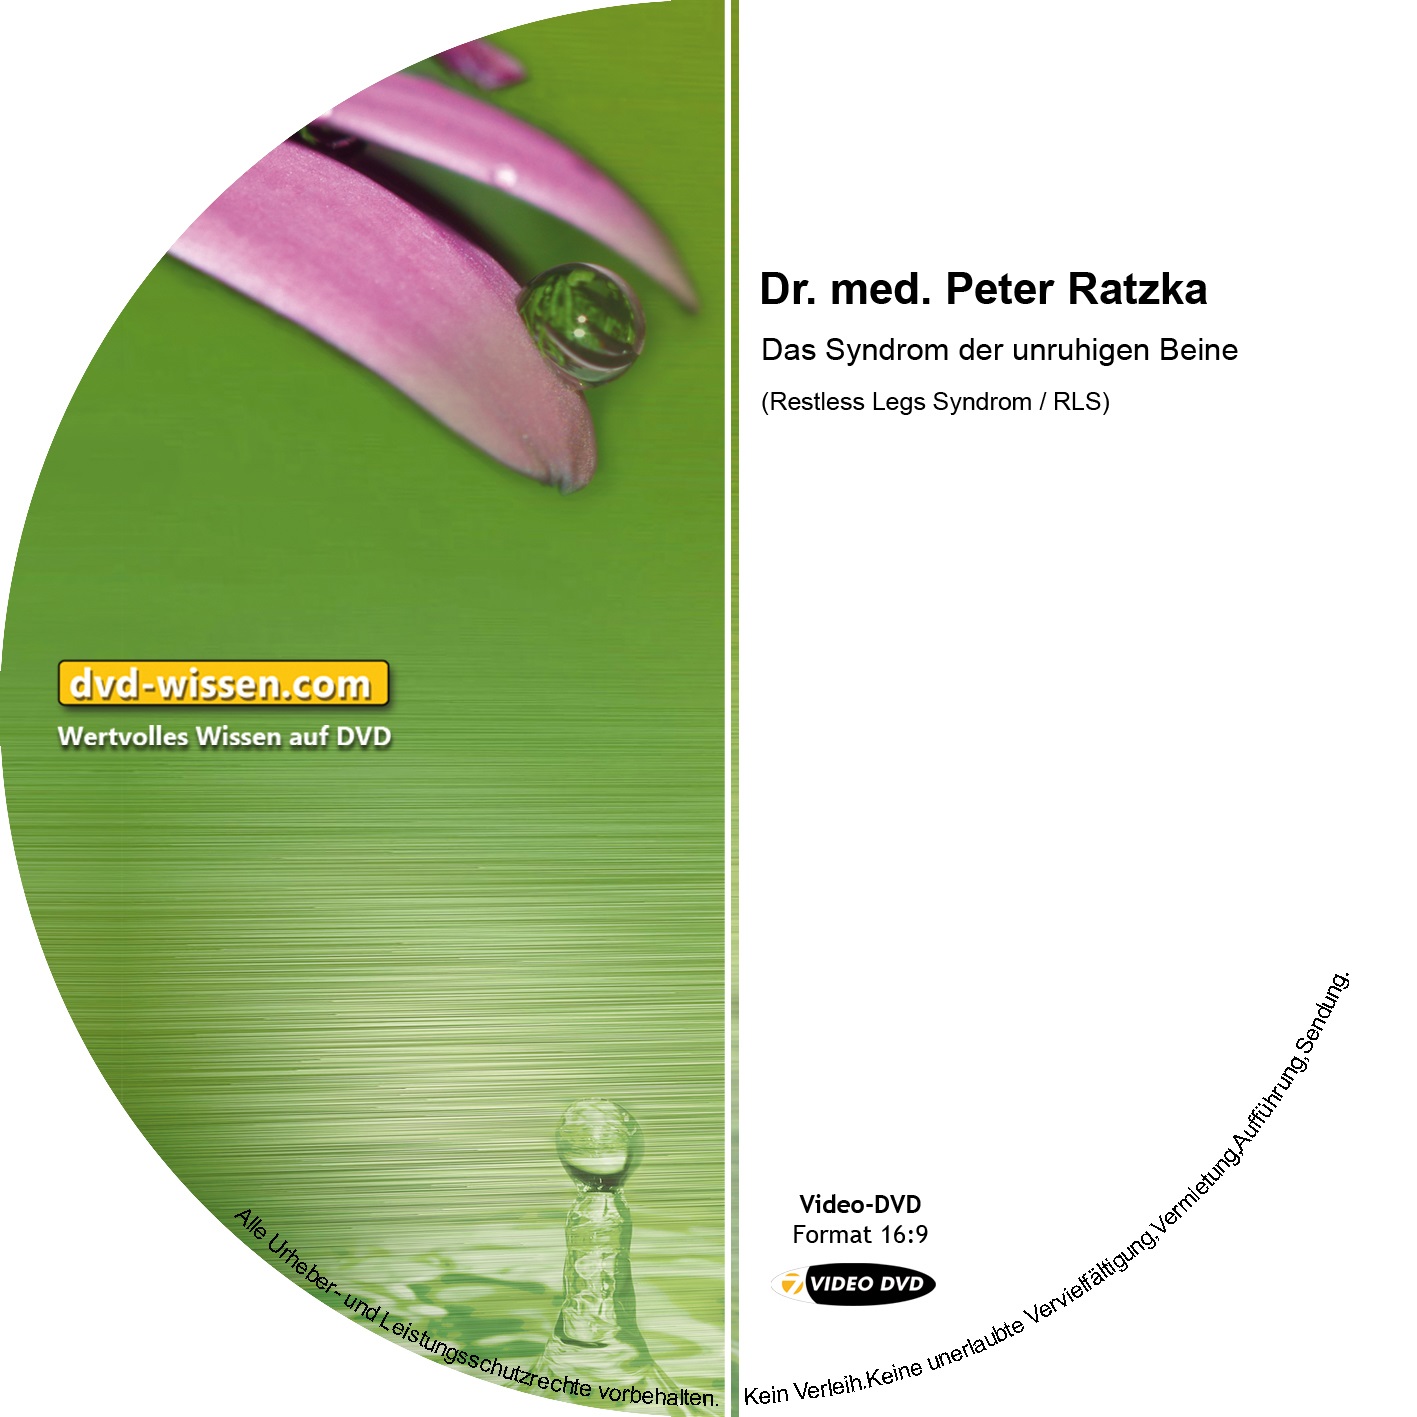 Dr. med. Peter Ratzka: Das Syndrom der unruhigen Beine (Restless Legs Syndrom / RLS)